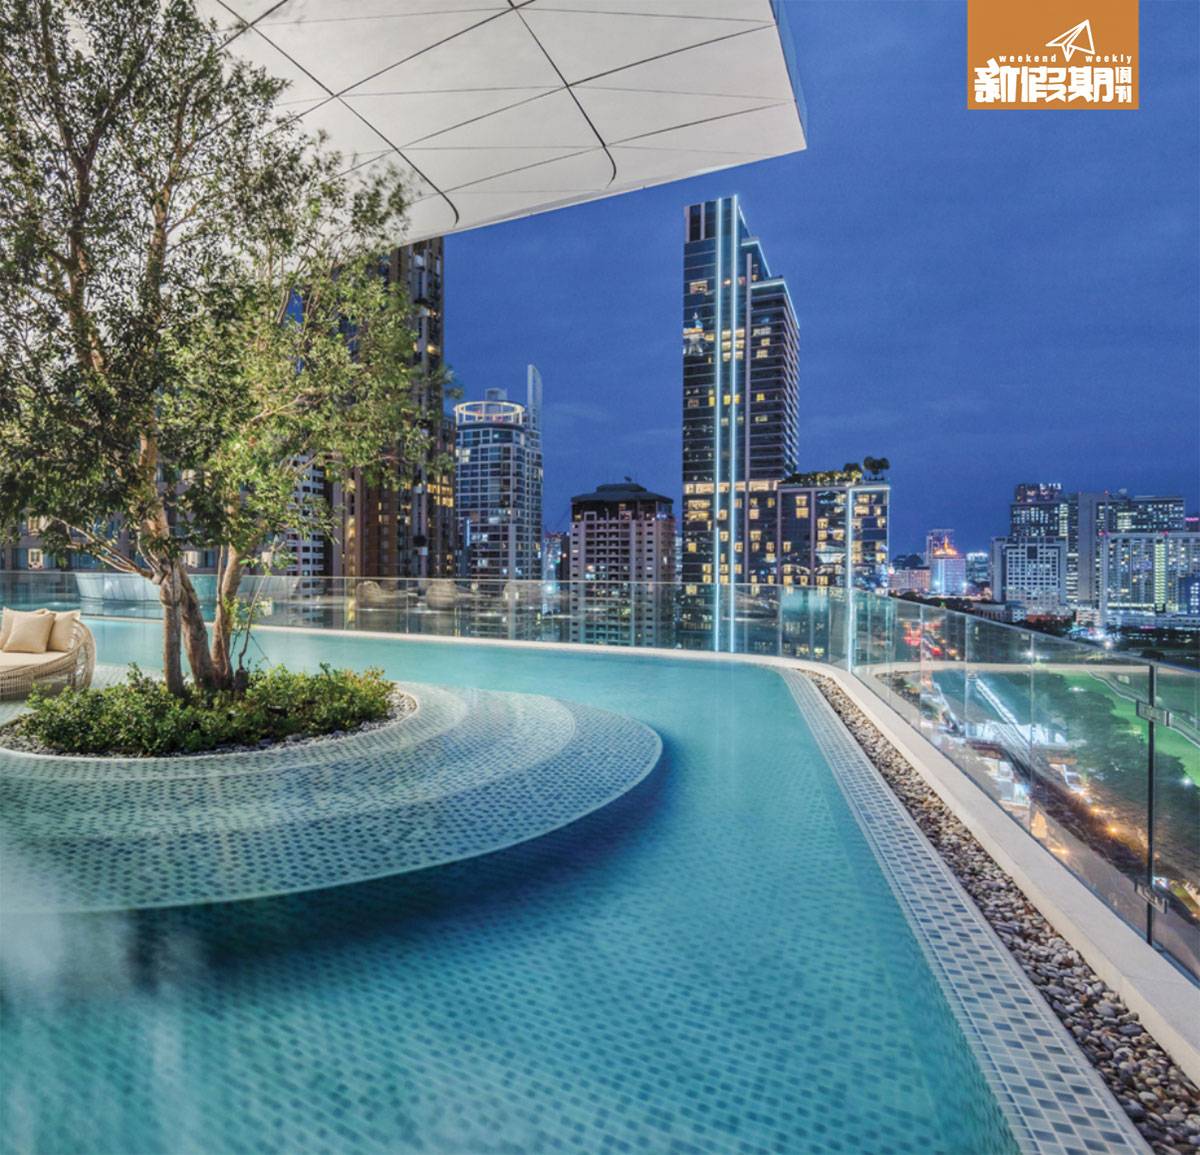 曼谷 新酒店 2018 酒店另一吸睛位，是位於酒店16樓的露天infinity pool，正中央矗立著一嚿雪白的大蘑菇雲，遮陰同時令泳池更顯藝術感！